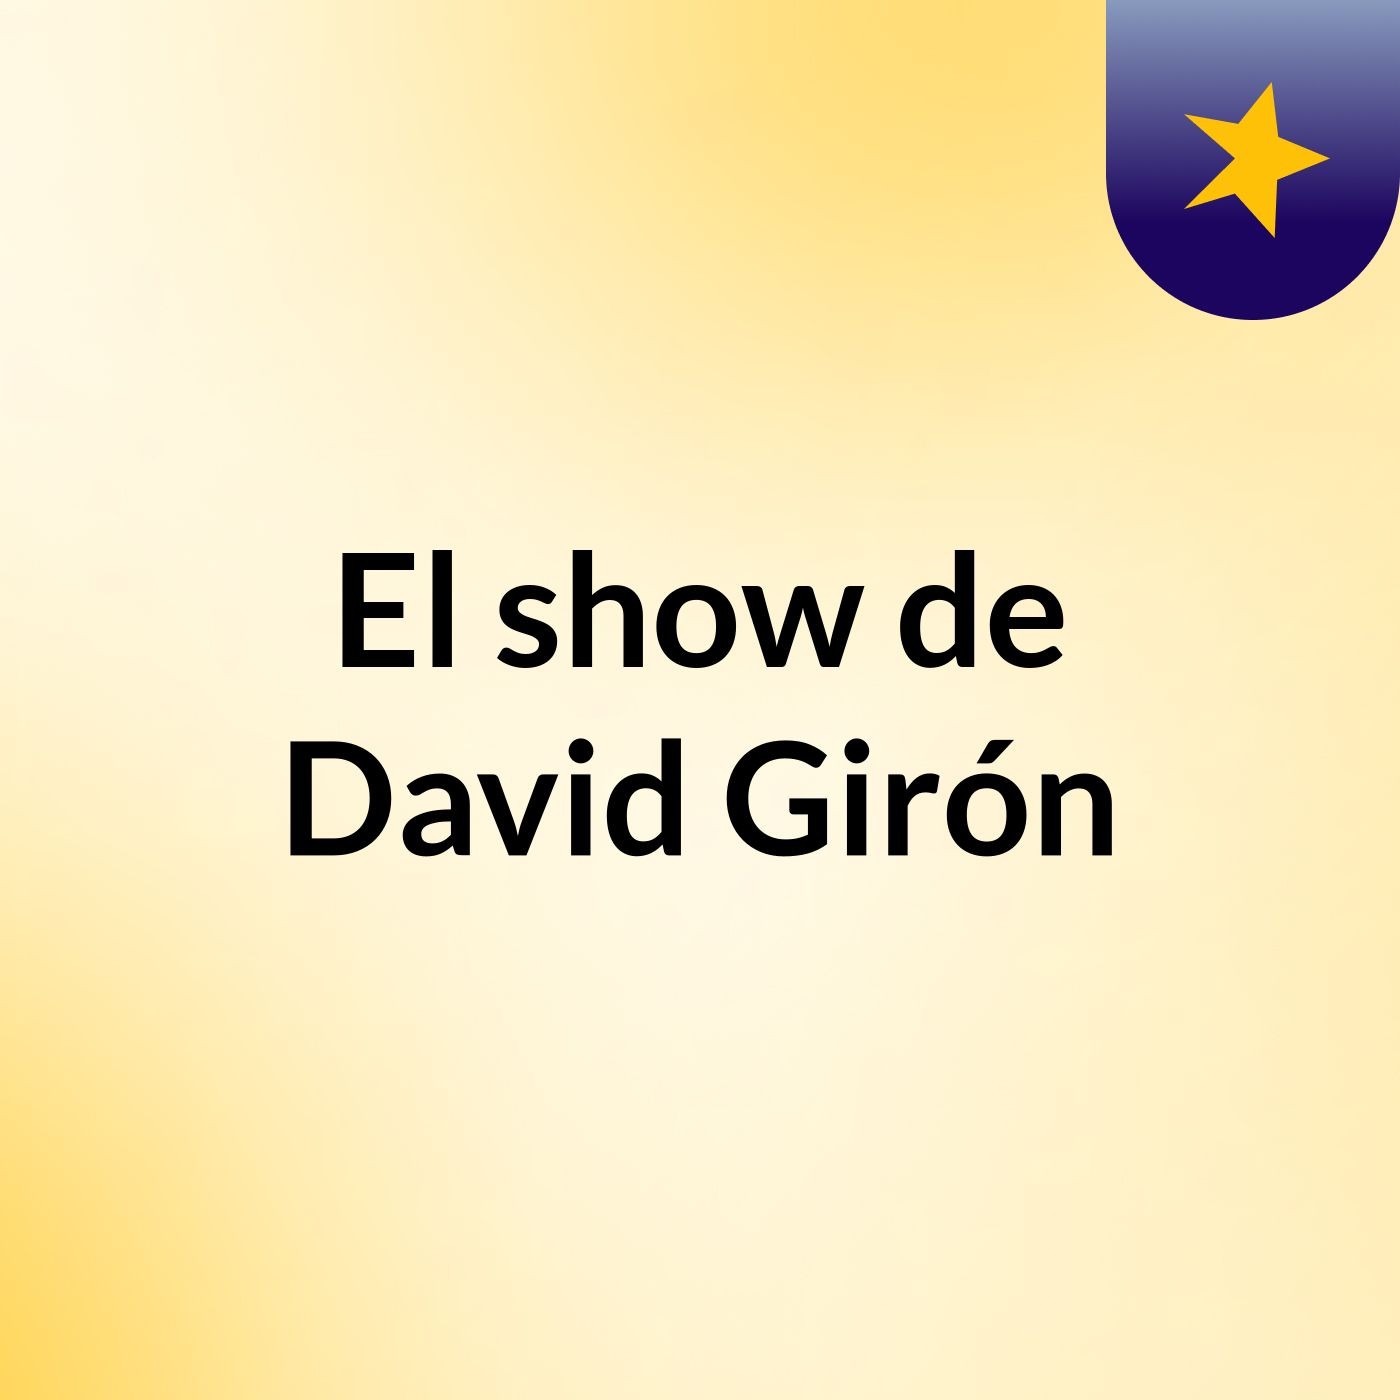 El show de David Girón